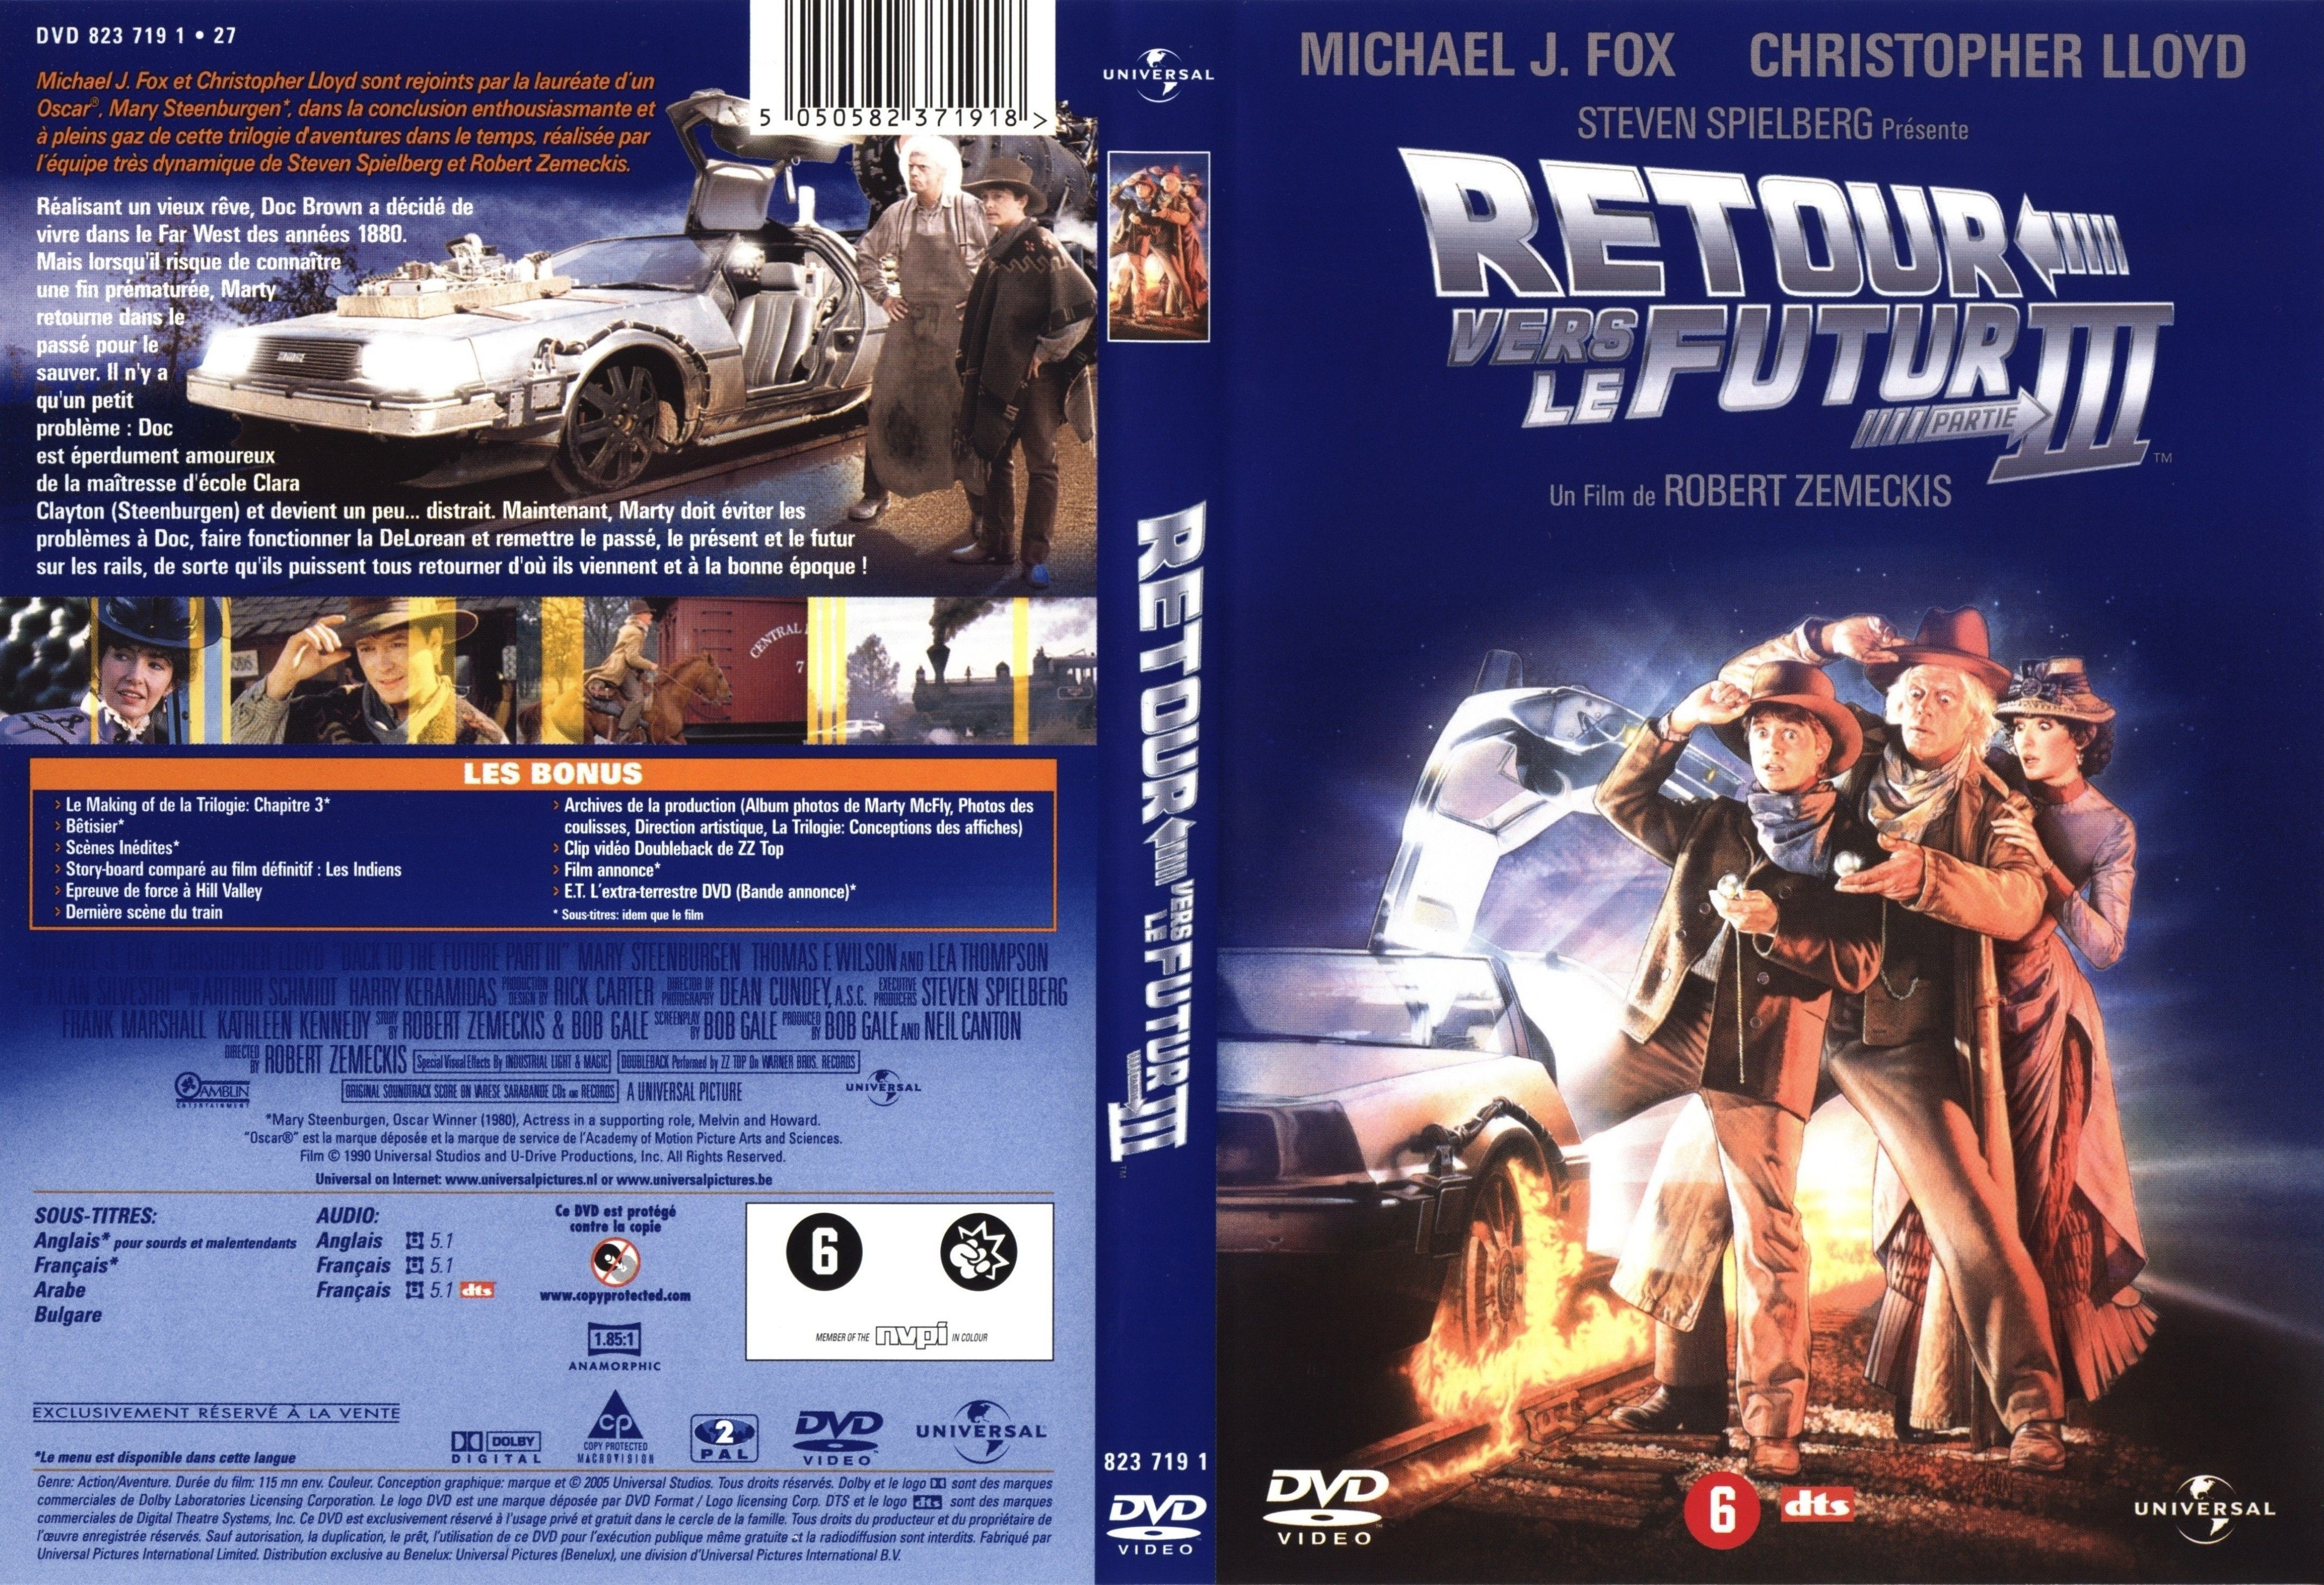 Jaquette DVD Retour vers le futur 3 v2